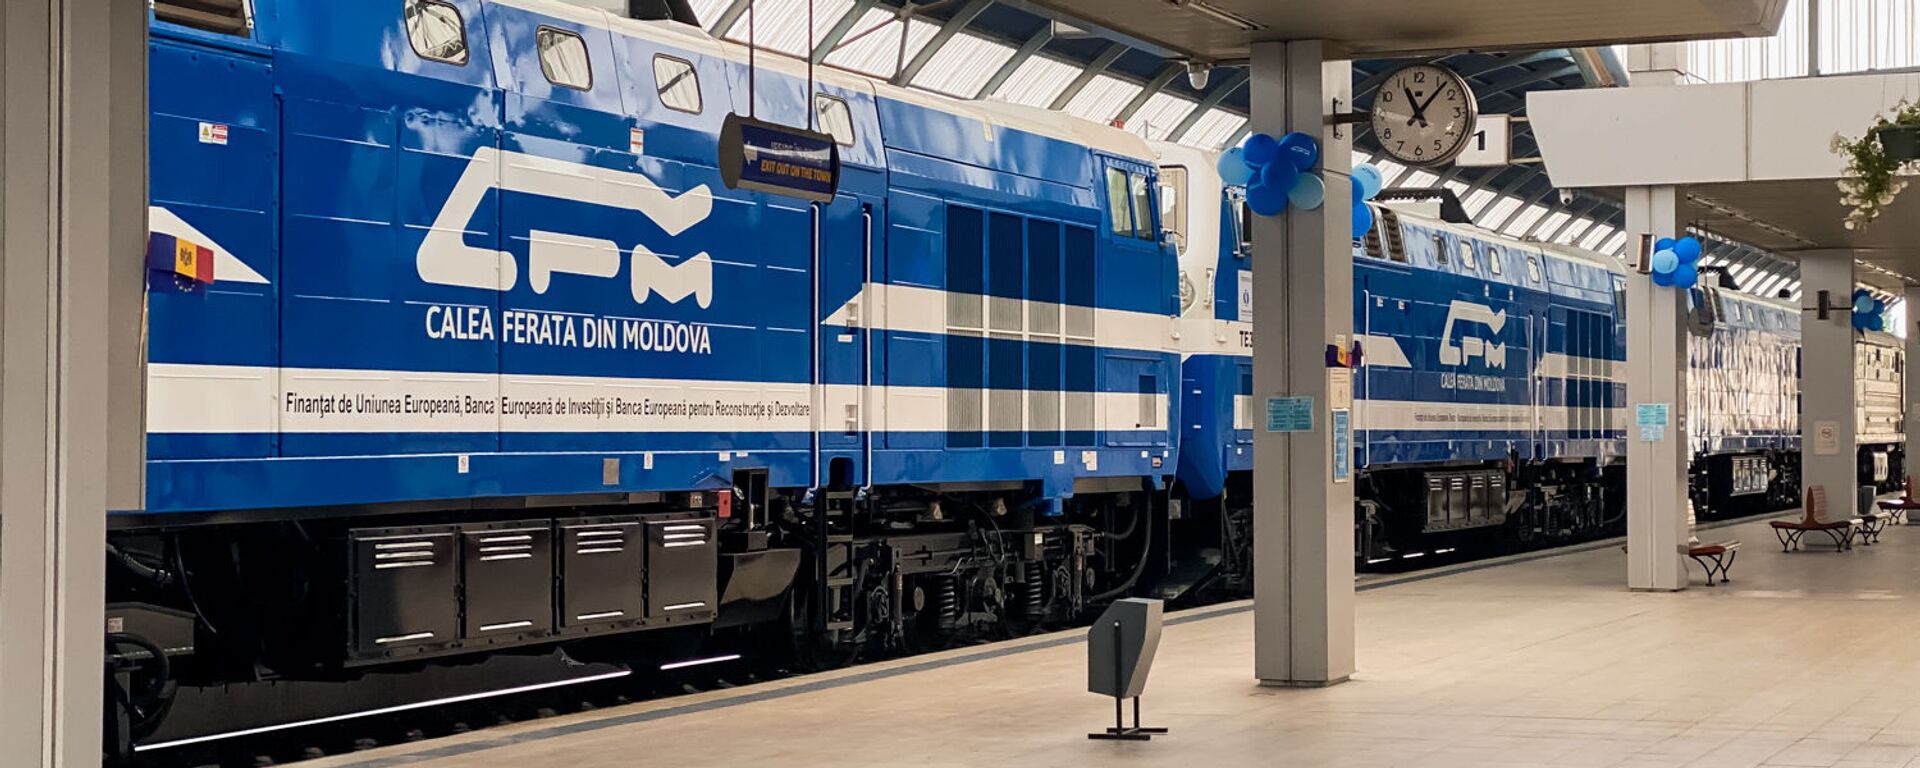 În Moldova, pentru prima dată în 30 de ani, au fost procurate 12 locomotive noi  - Sputnik Moldova, 1920, 24.02.2021